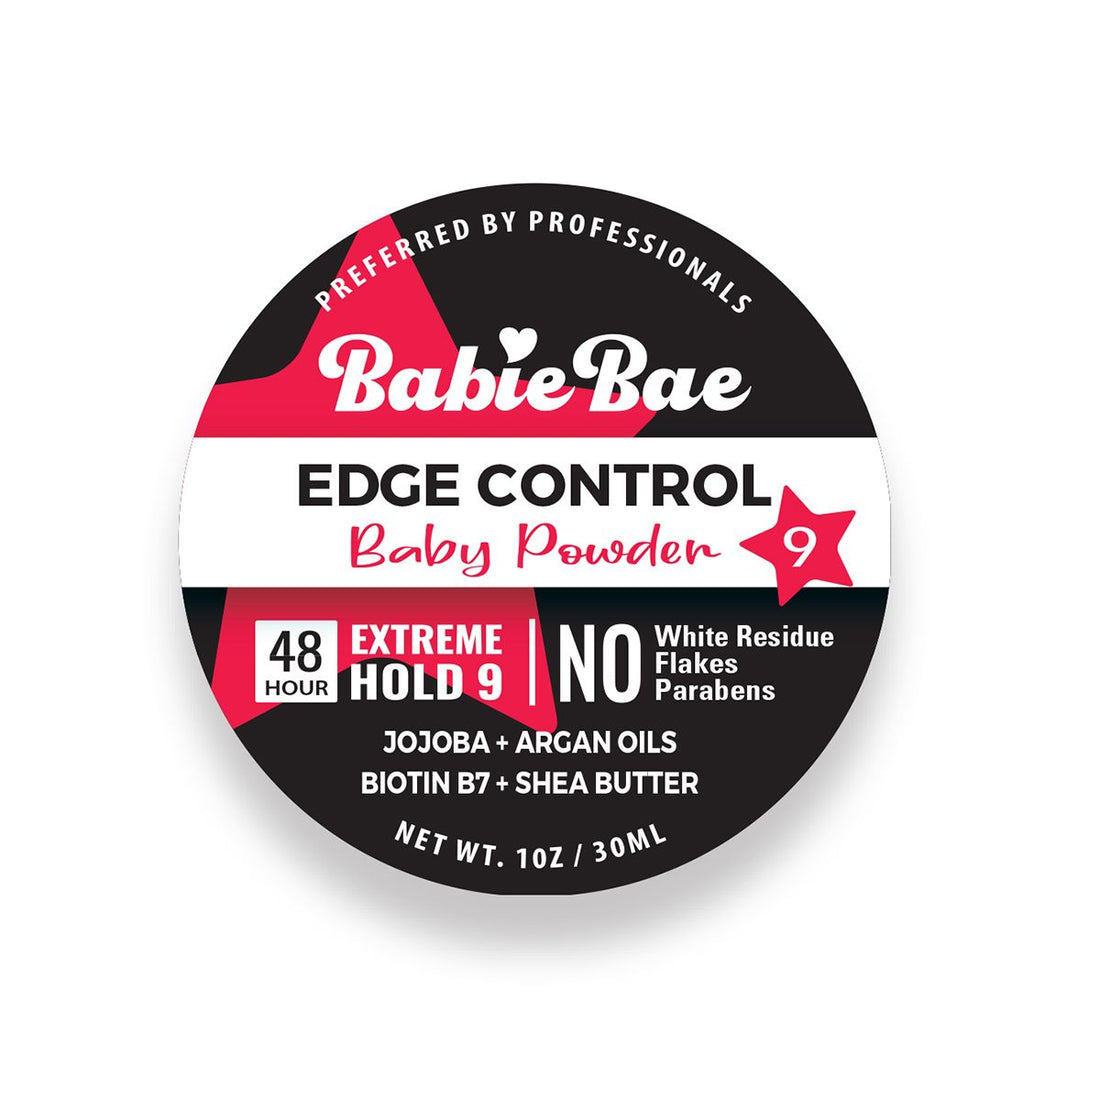 Edge Control - Baby Powder +9 (1oz)